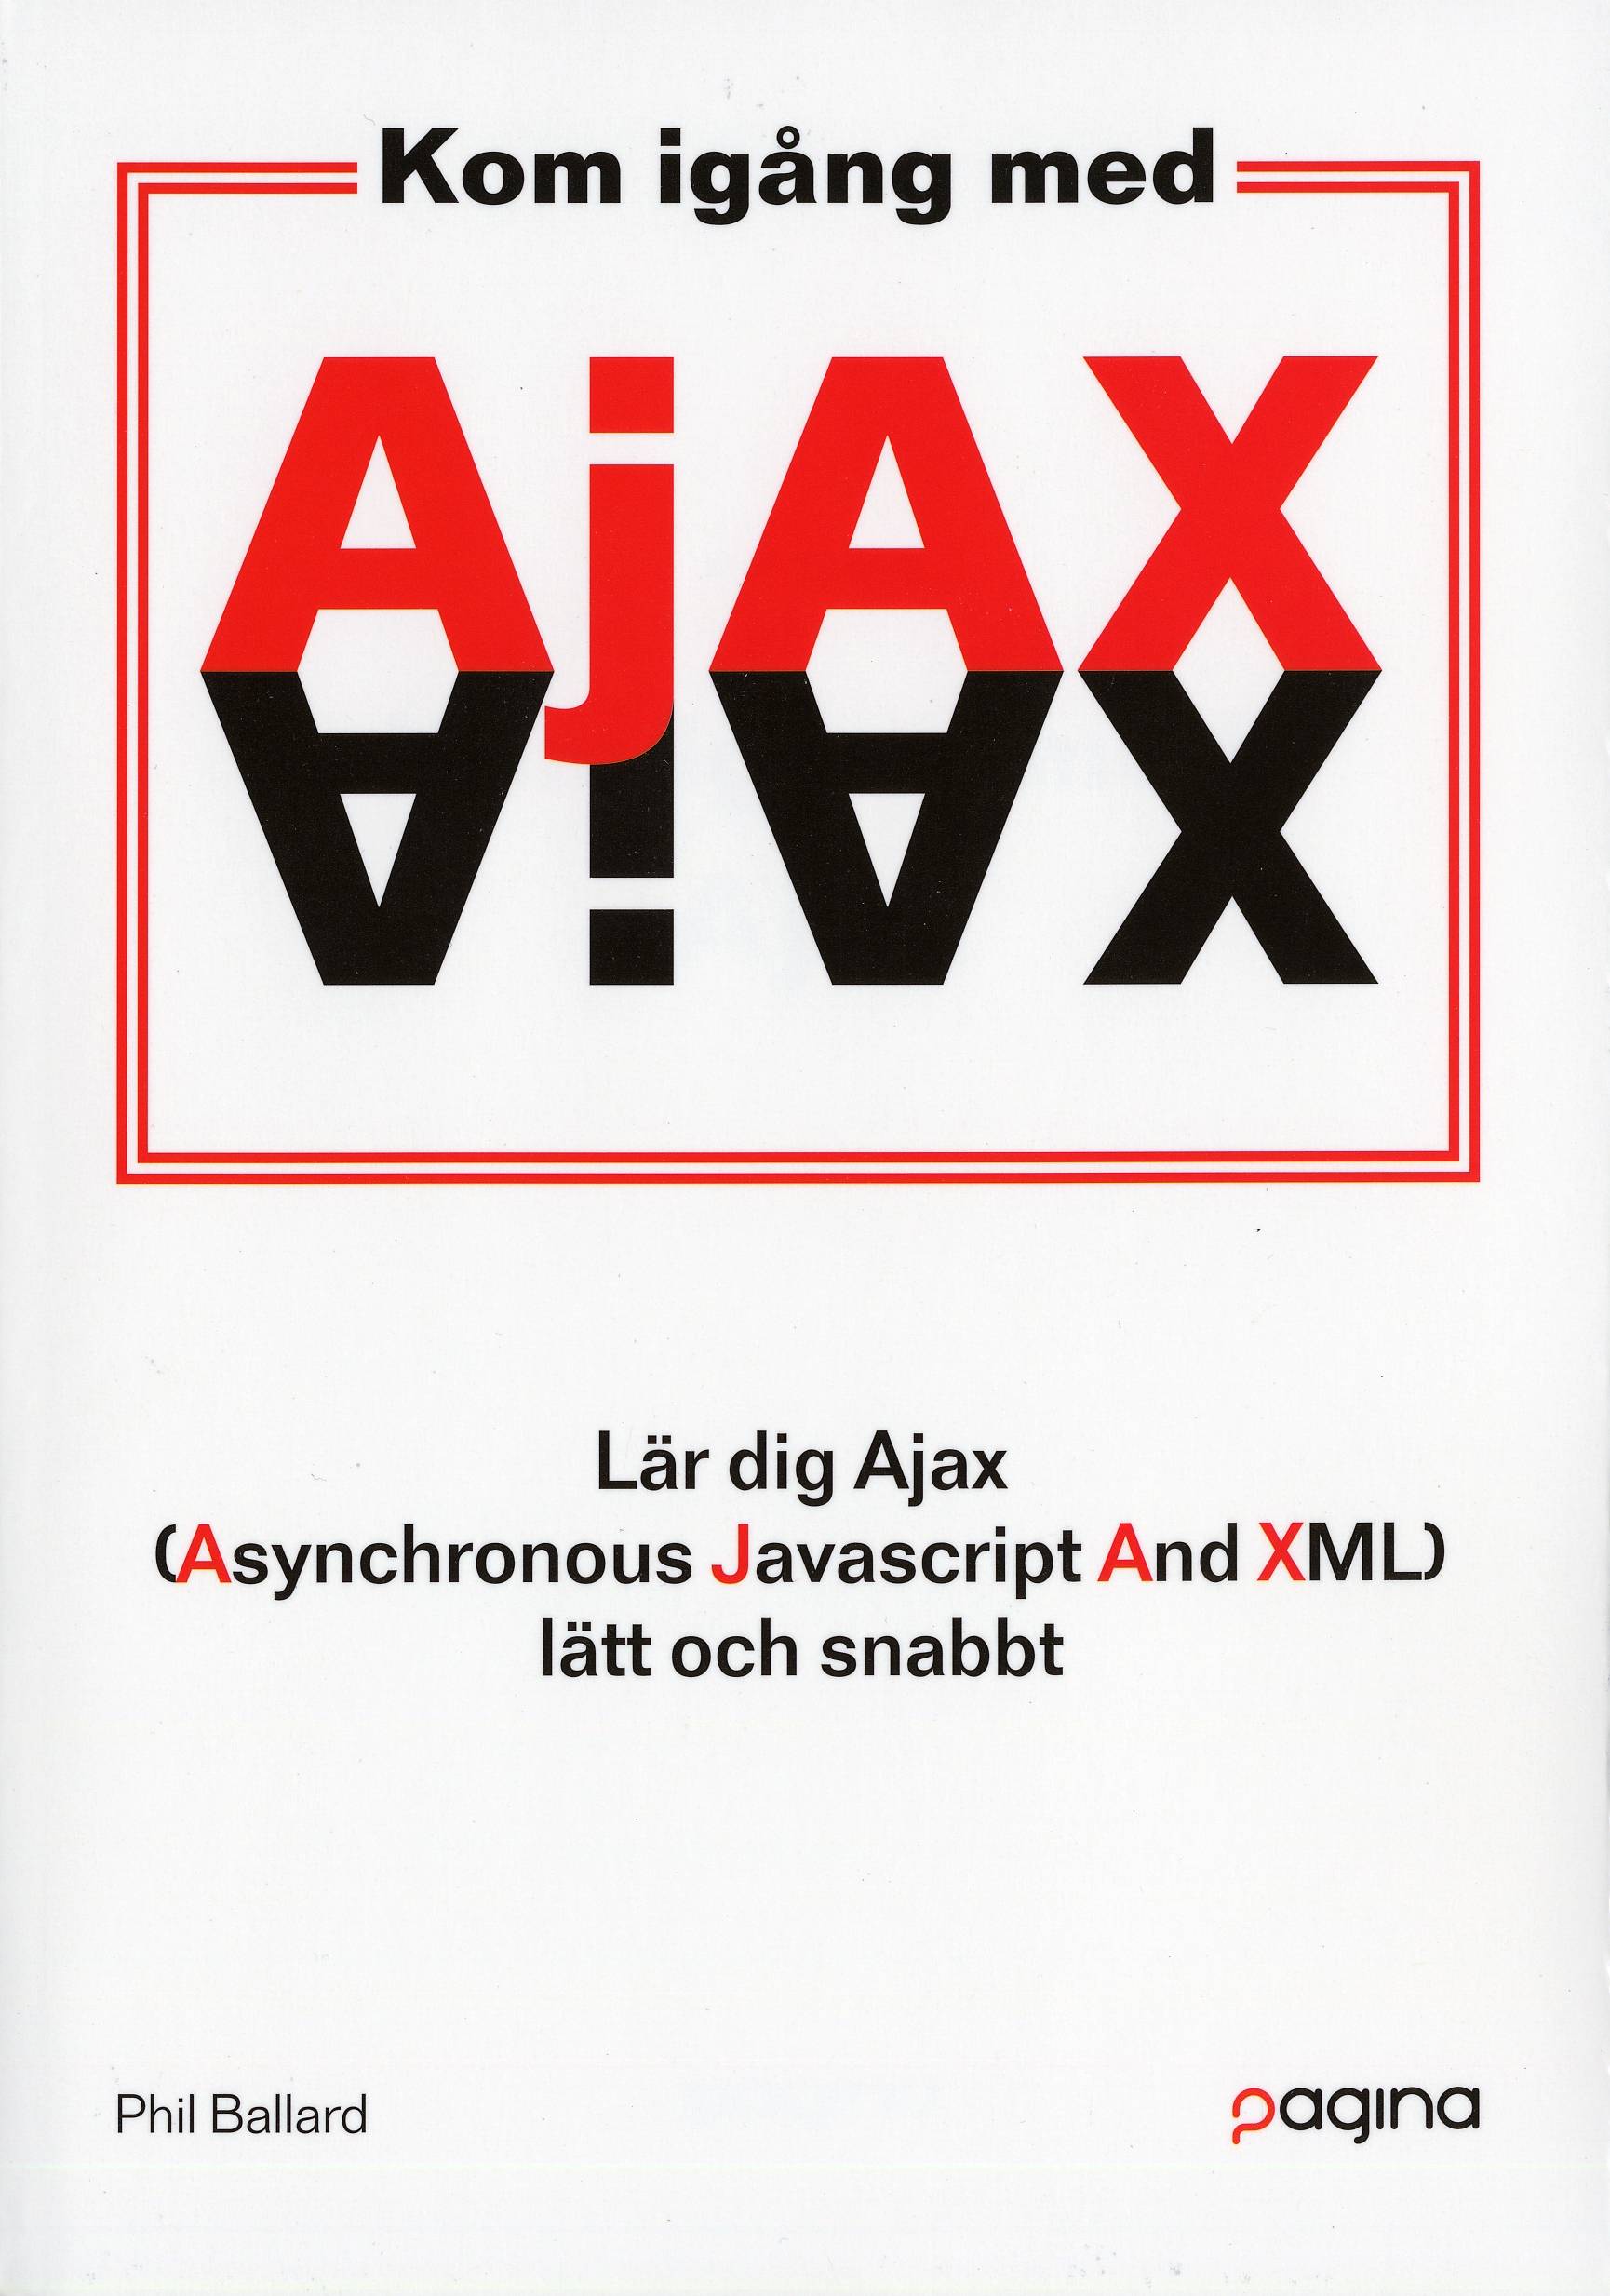 Kom igång med Ajax